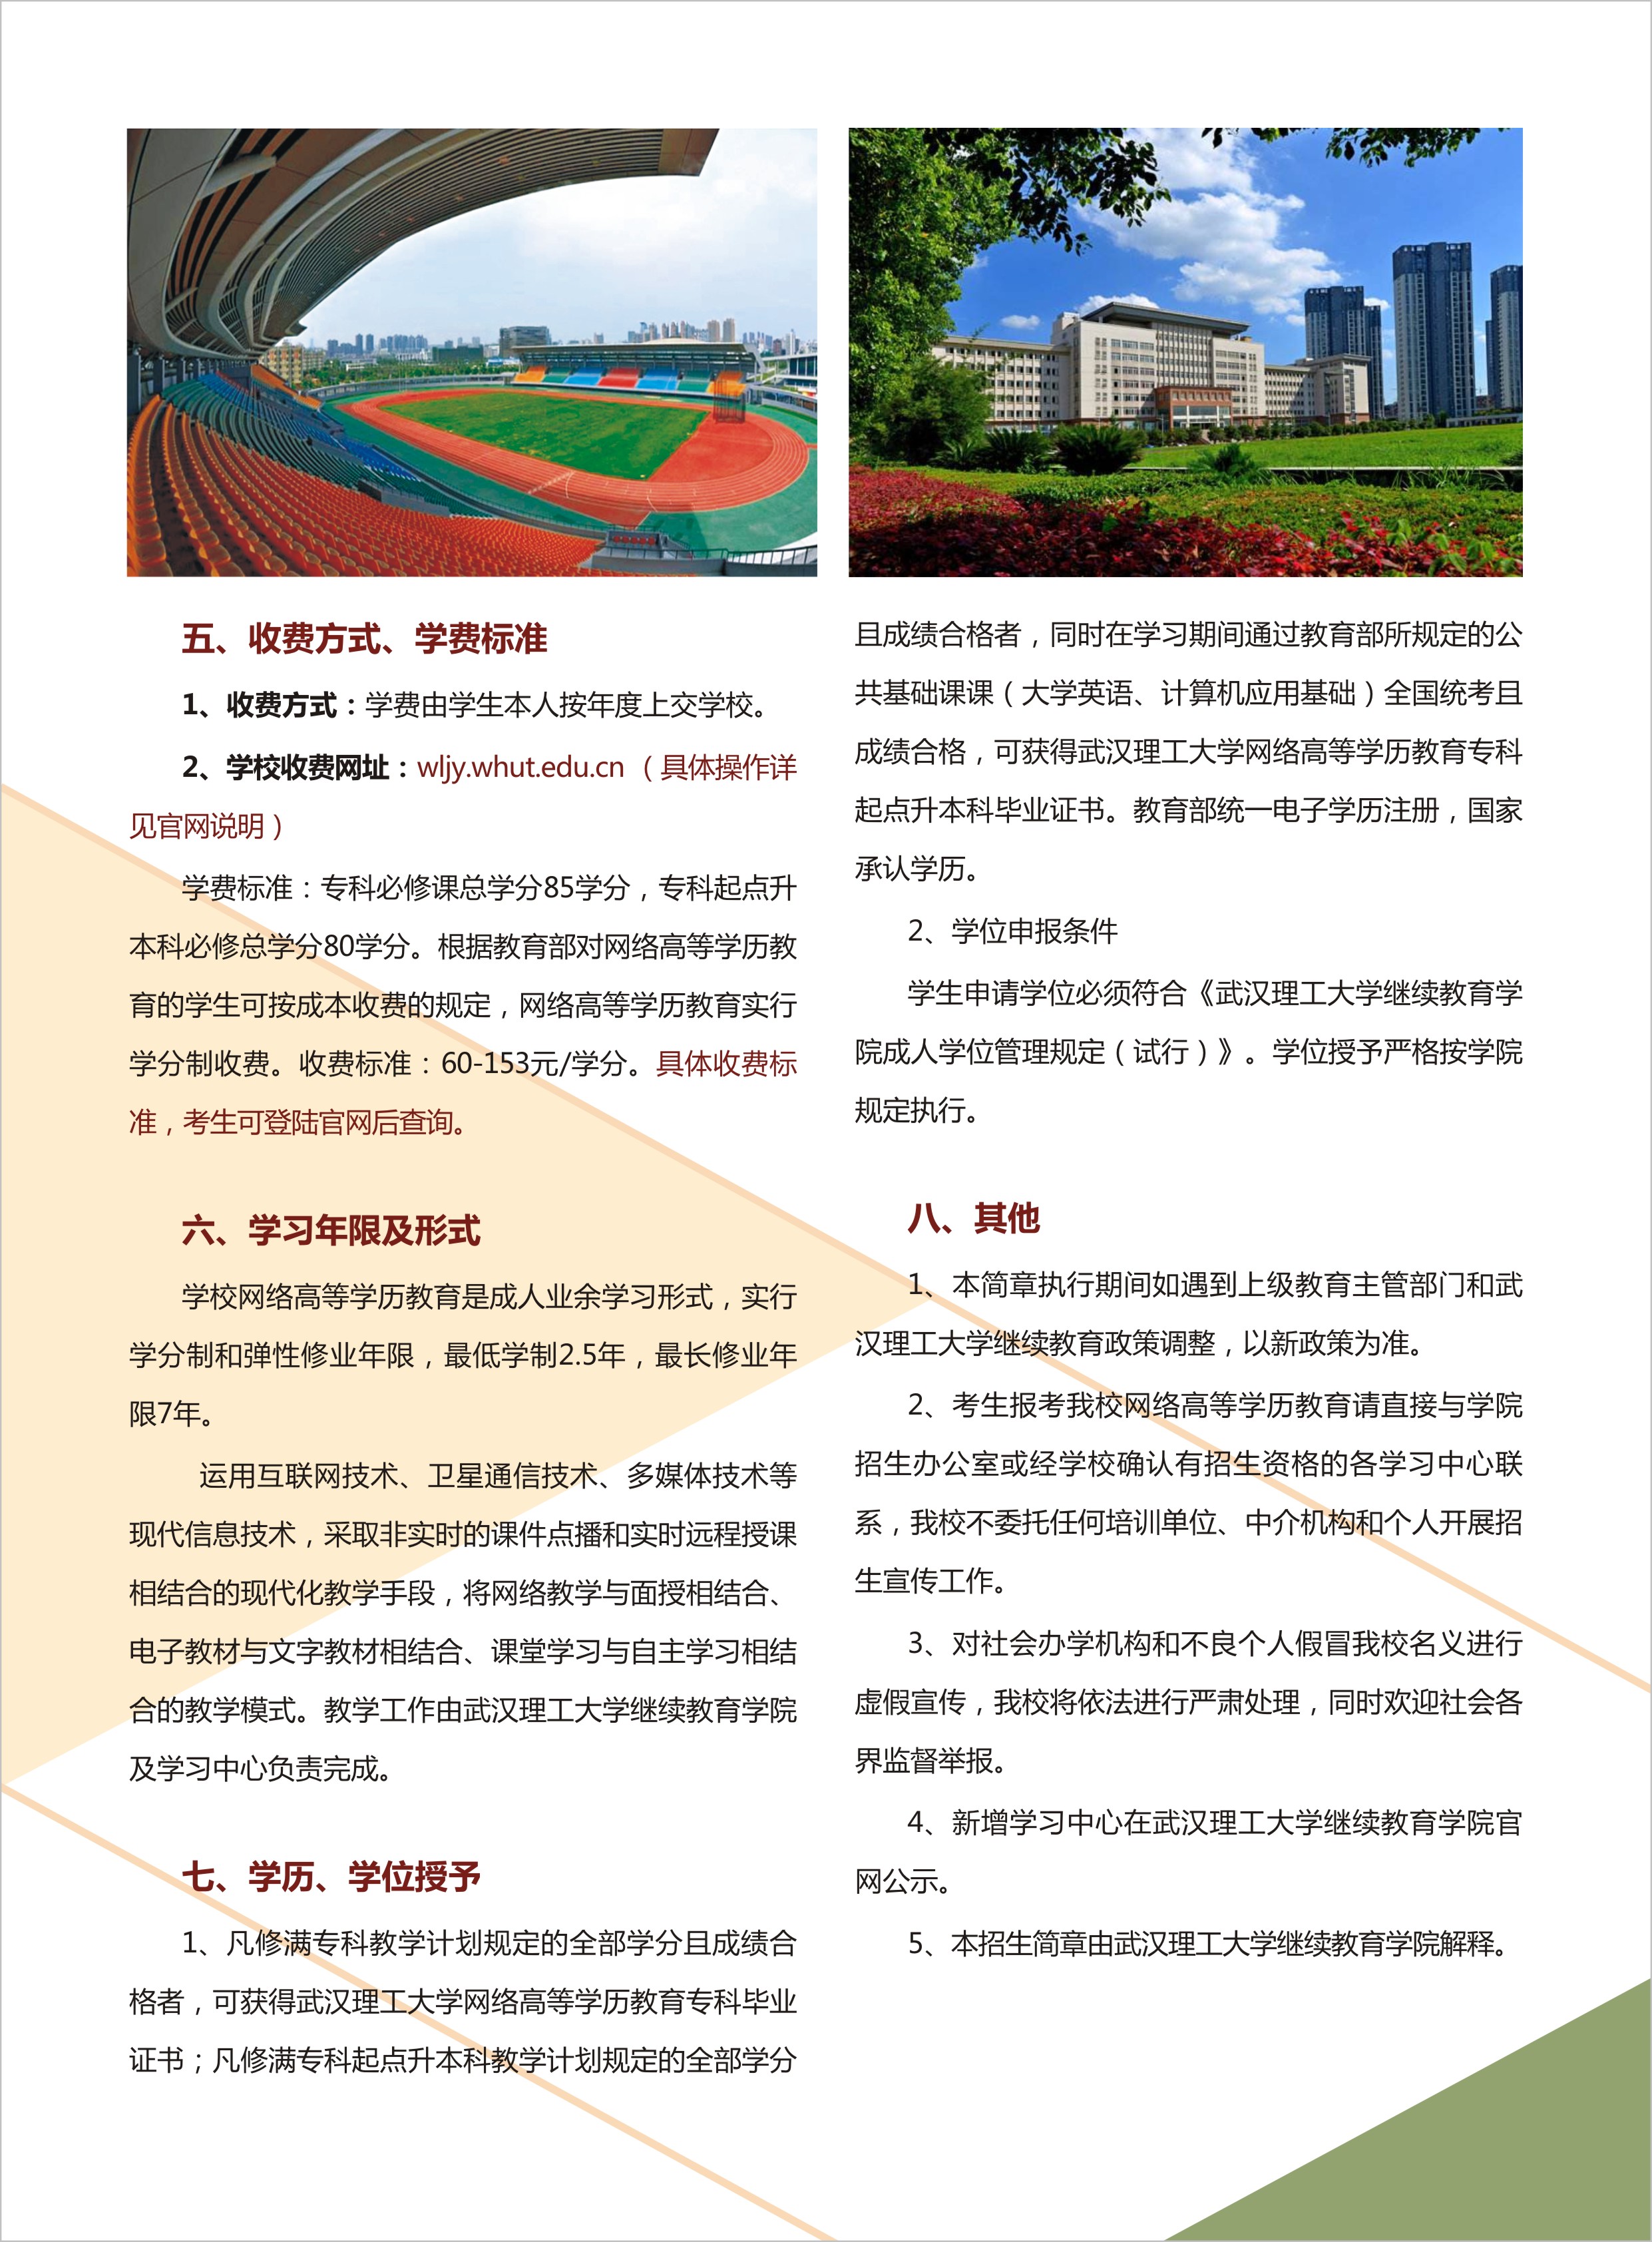 2020年秋季武汉理工大学网络教育